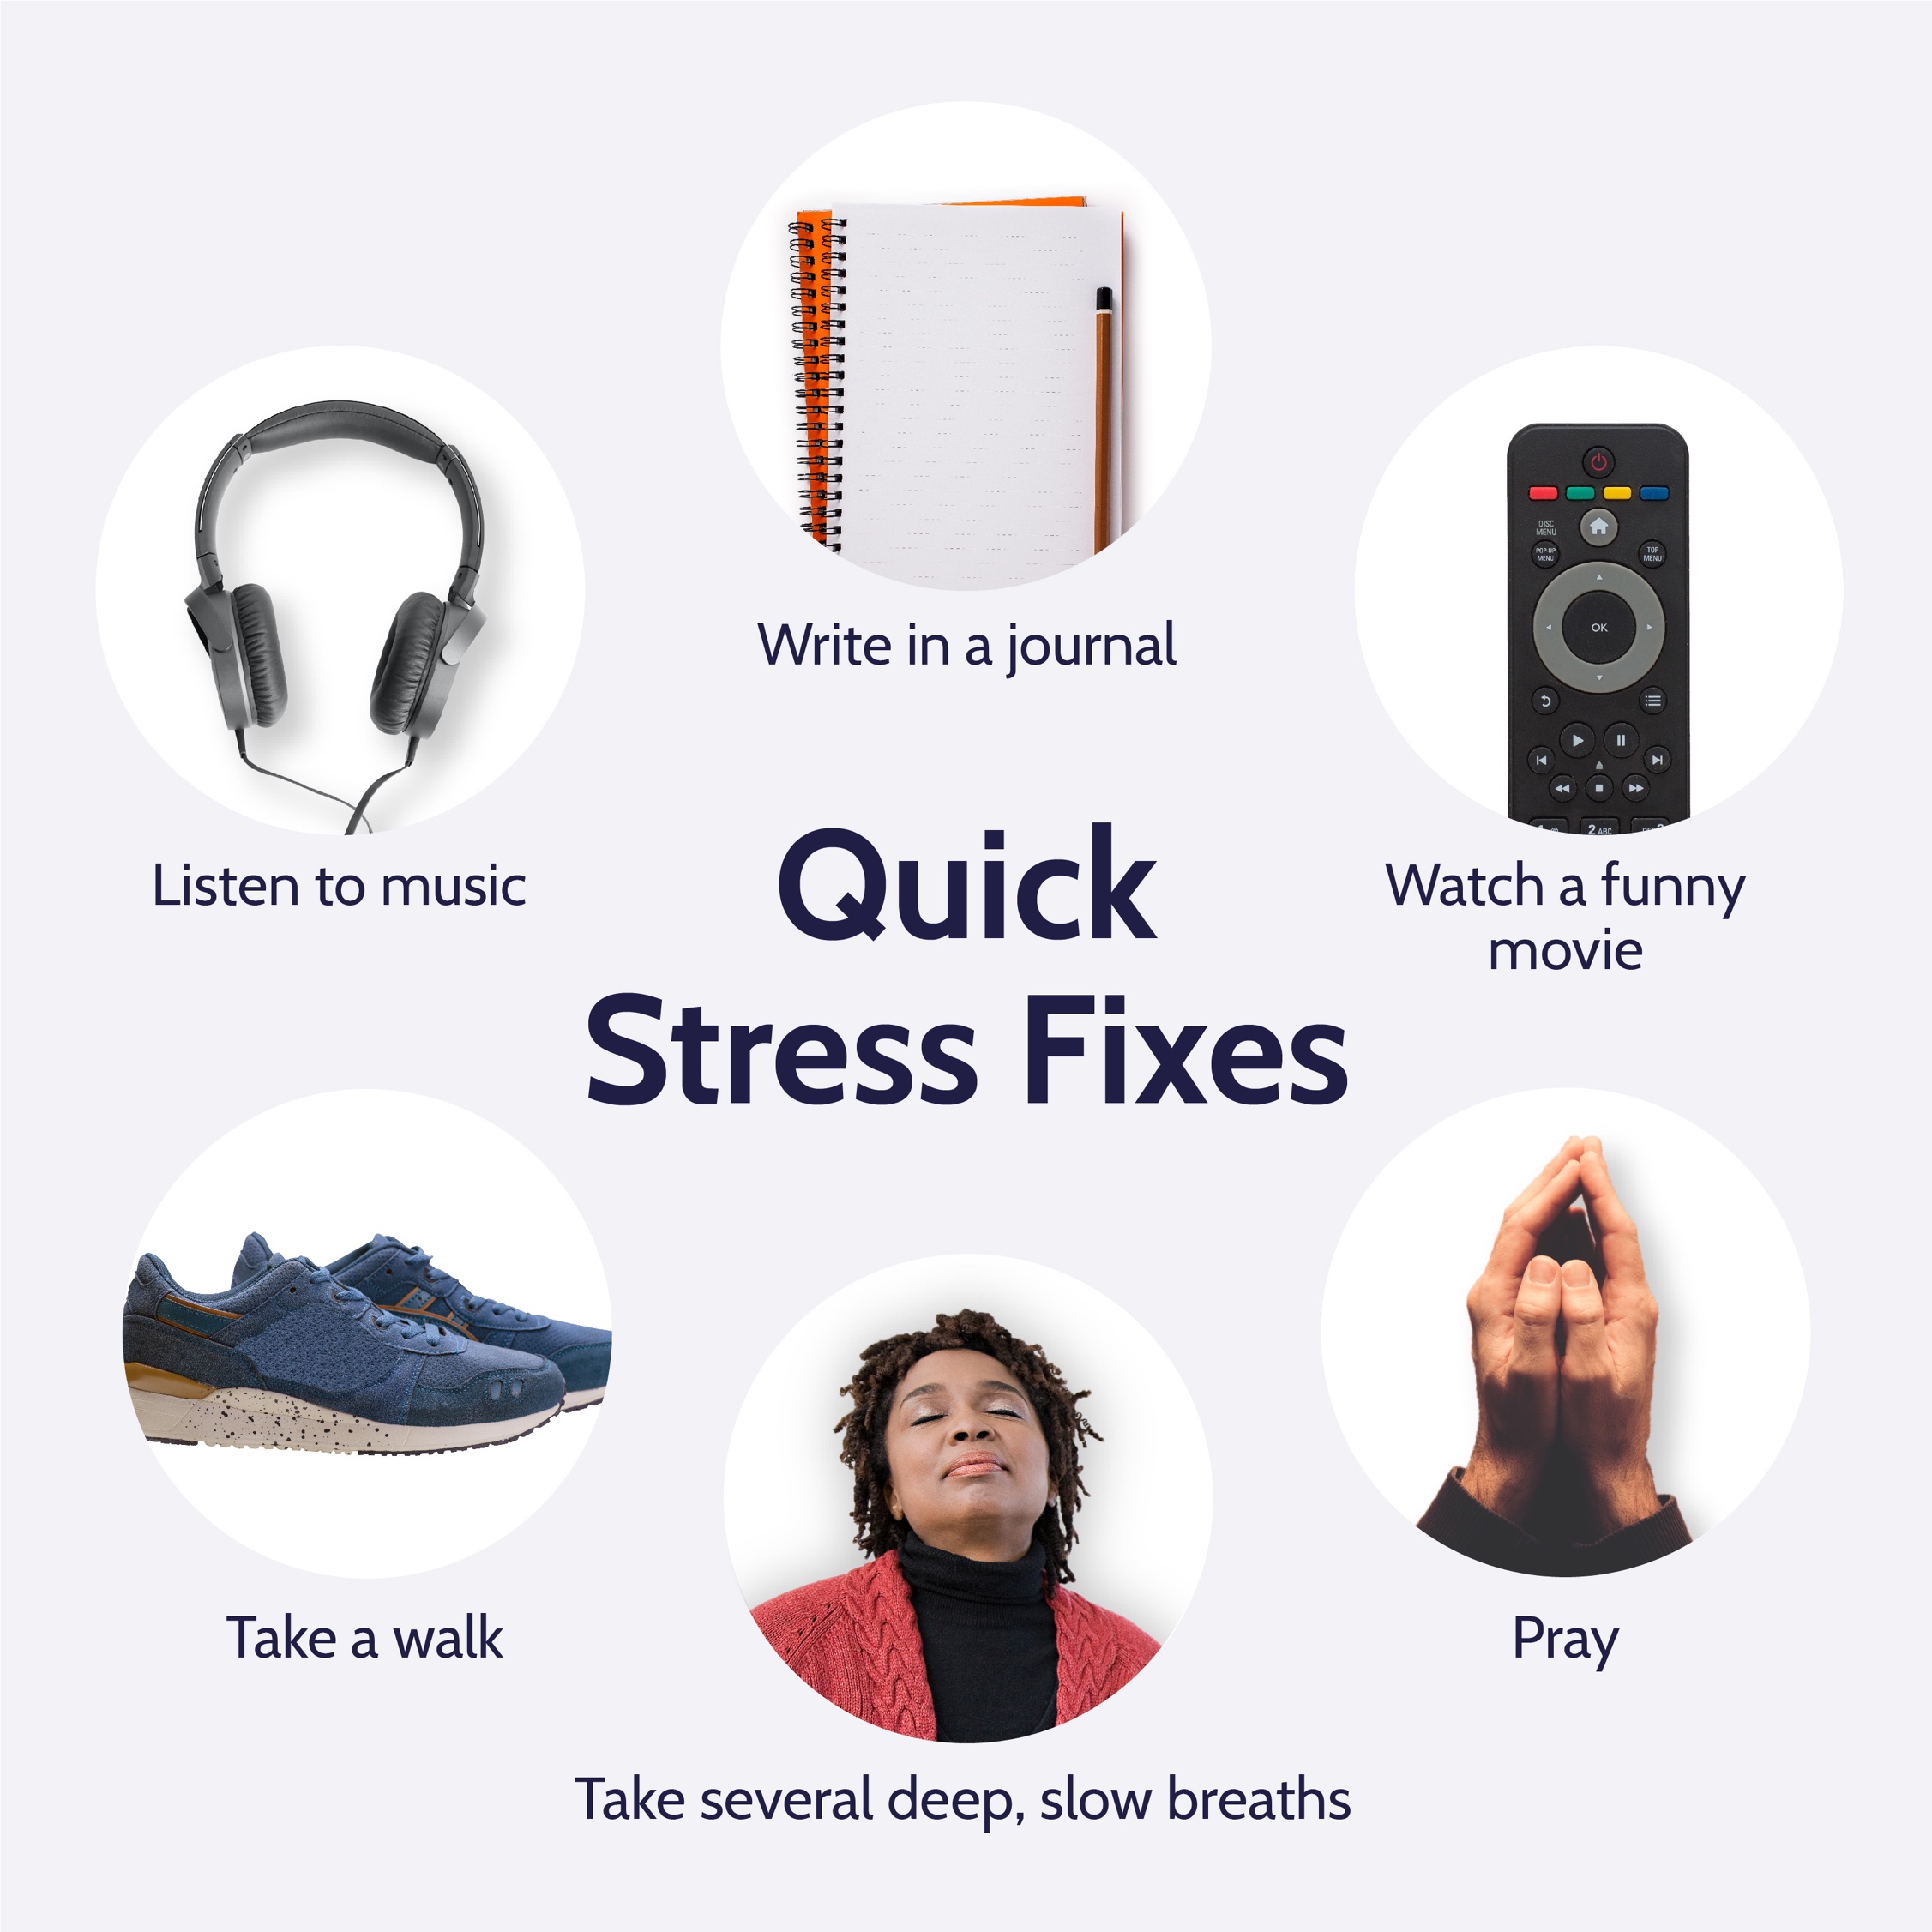 Quick Stress Fixes